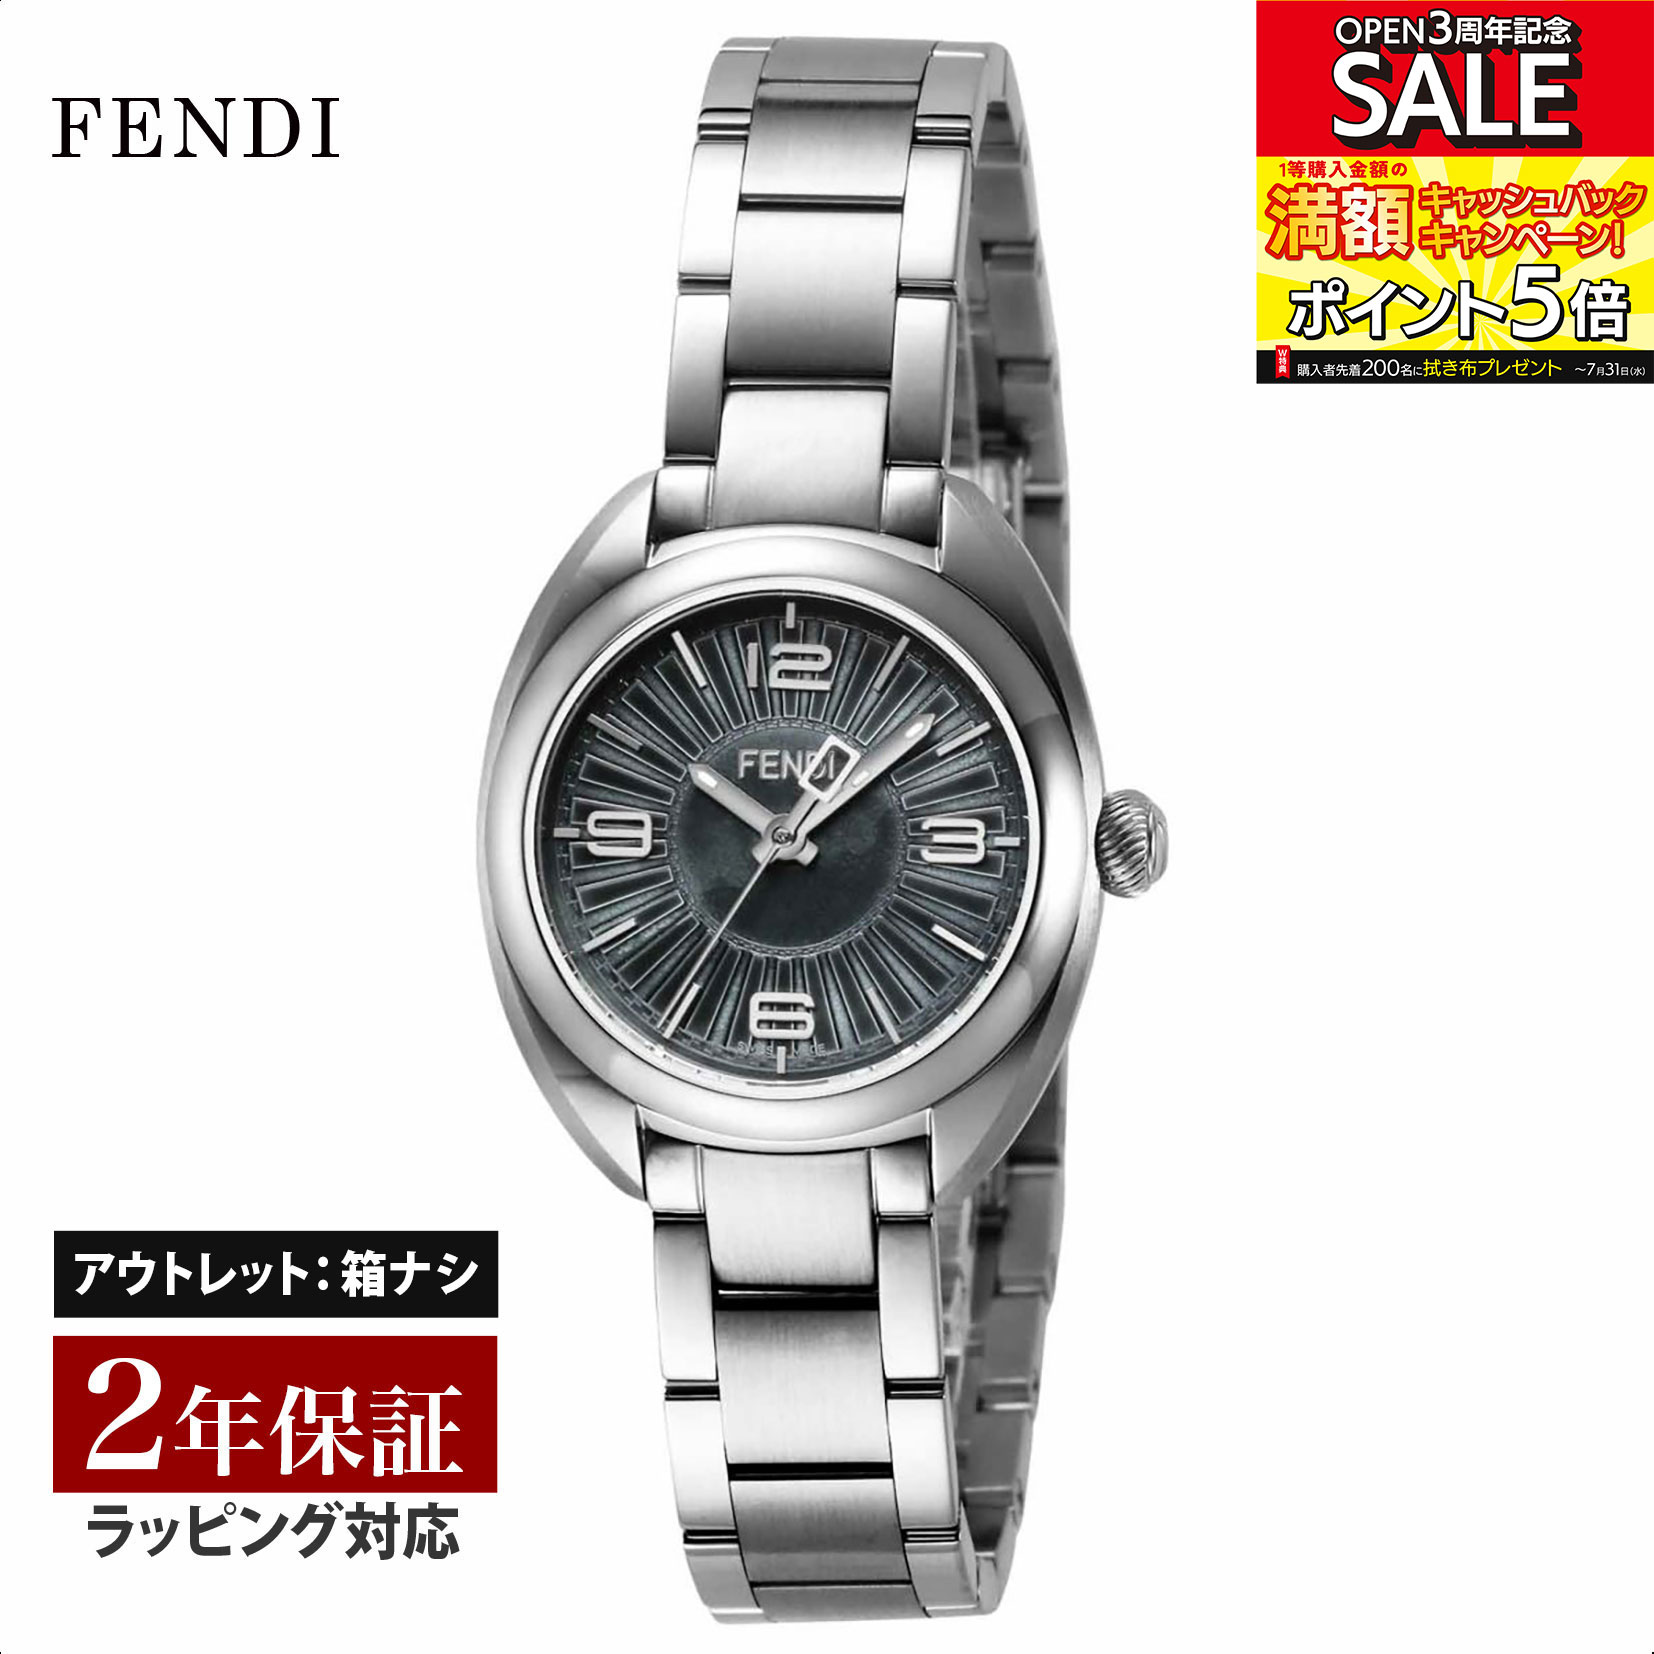 【クリアランスSALE】 FENDI フェンディ MomentoFendi クォーツ レディース ブラック F218021500 腕時計 高級腕時計 ブランド 